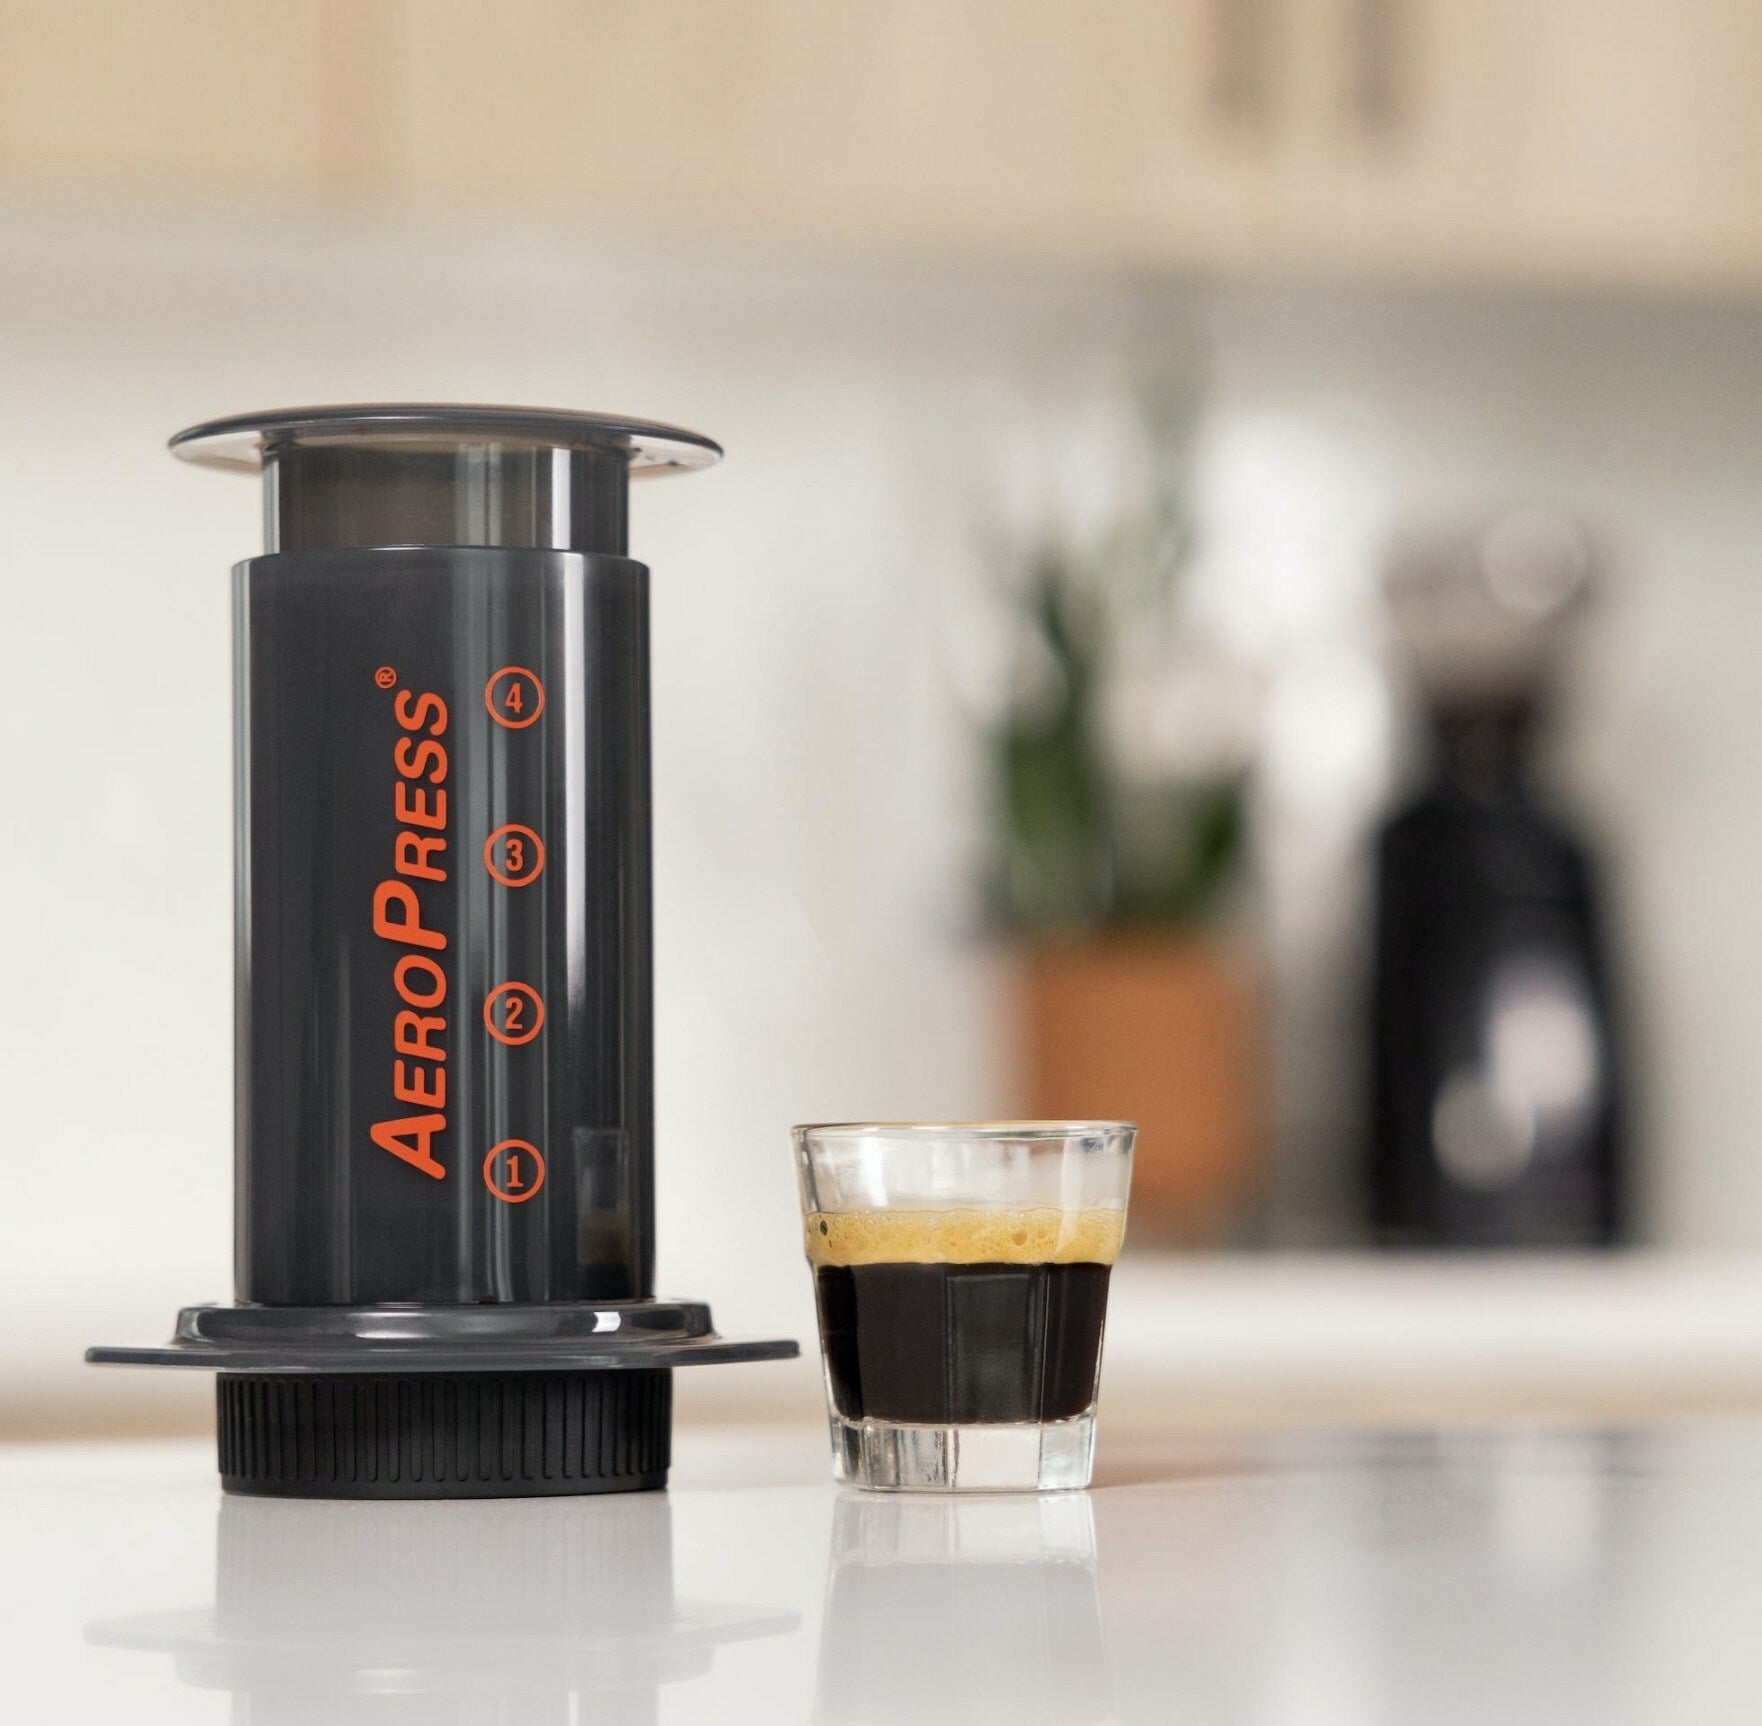 Tapa de filtro Flow Control - AeroPress – Lima con Cafeina